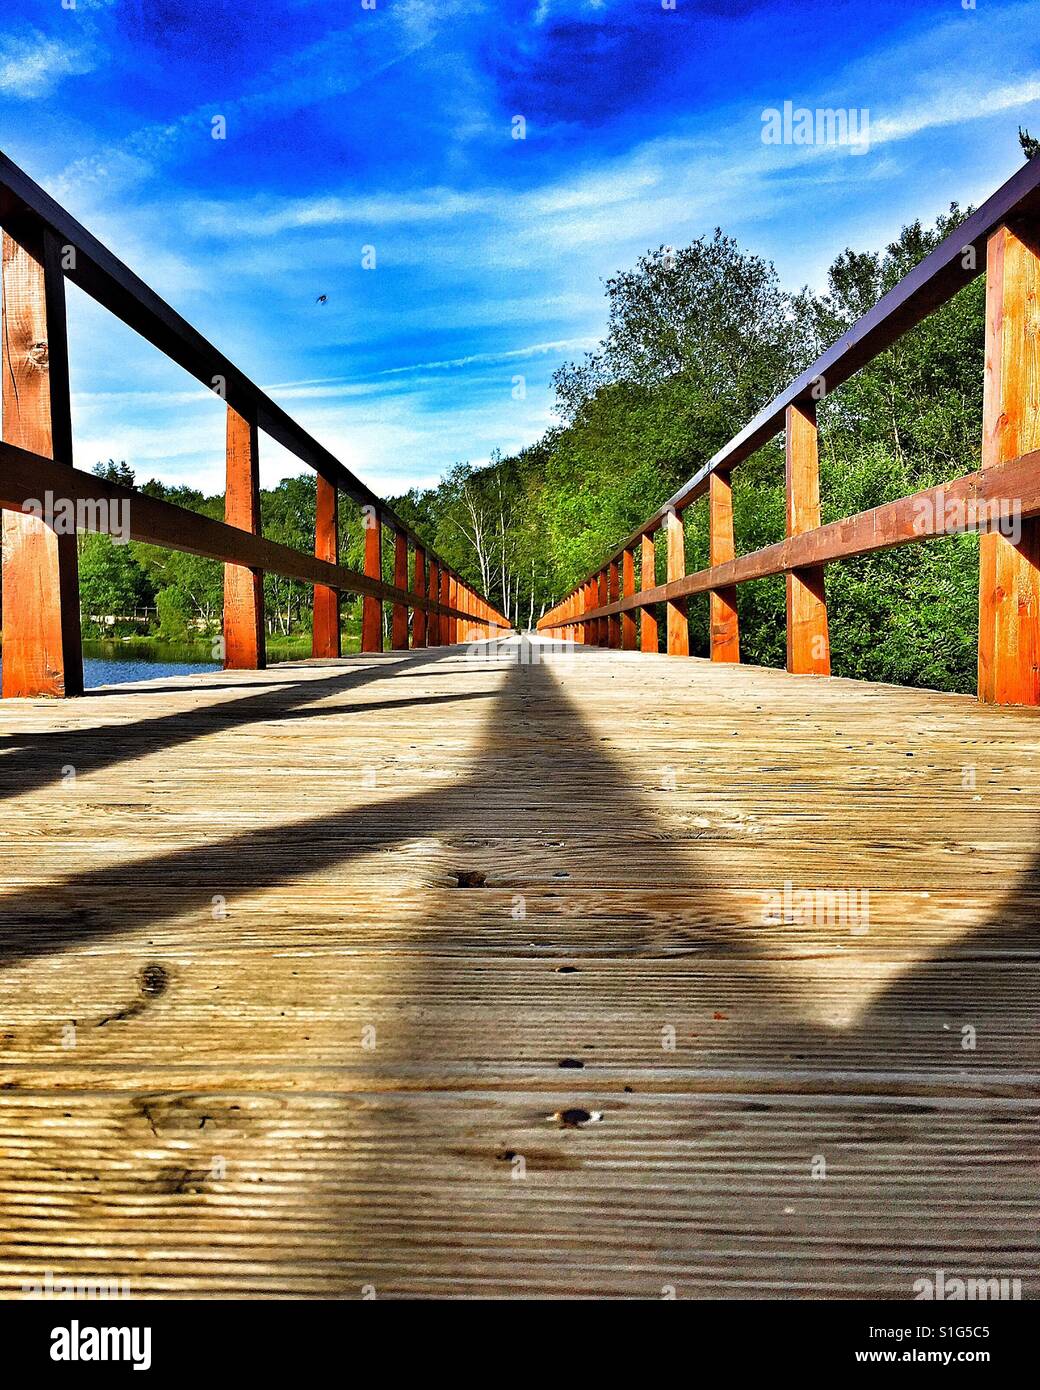 Le linee convergenti di un legno ponte pedonale in una diga serbatoio, con alberi. Foto Stock